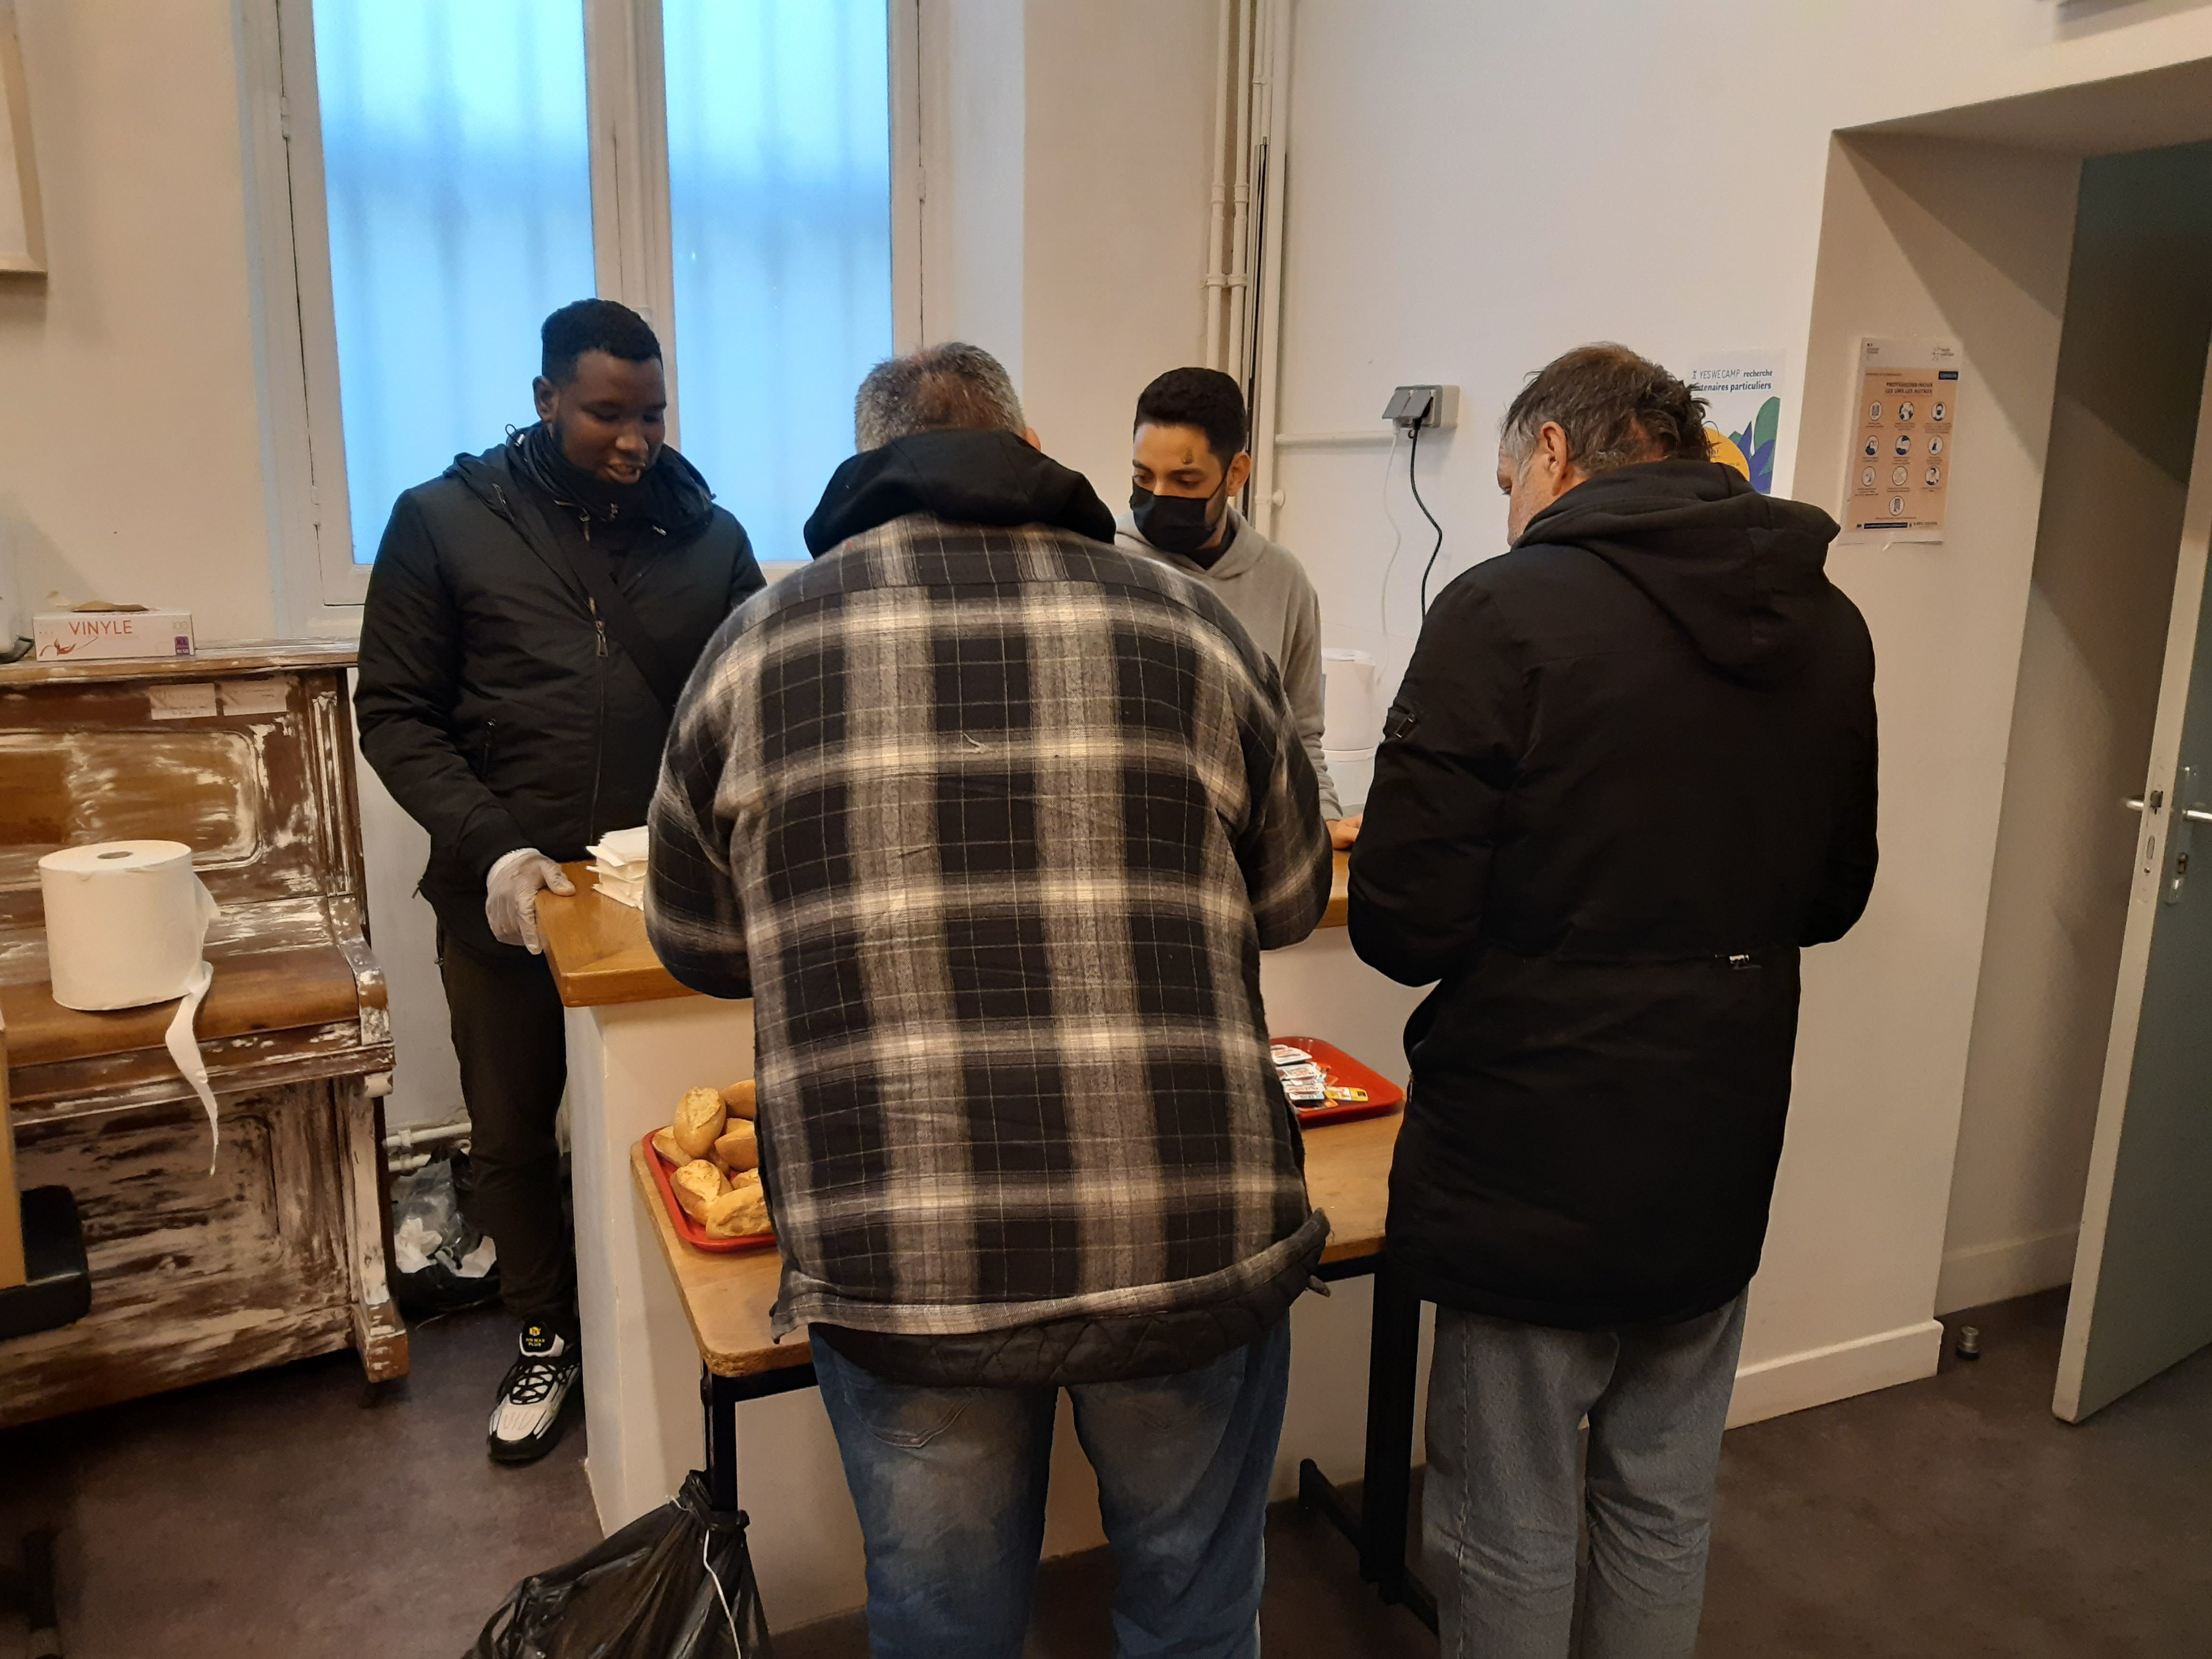 Les "petits-déjeuners de Paris centre" sont servis sept jours sur sept dans les locaux de l'ancienne mairie du IVe par l’association Emmaüs Solidarités. LP/Ph.B.